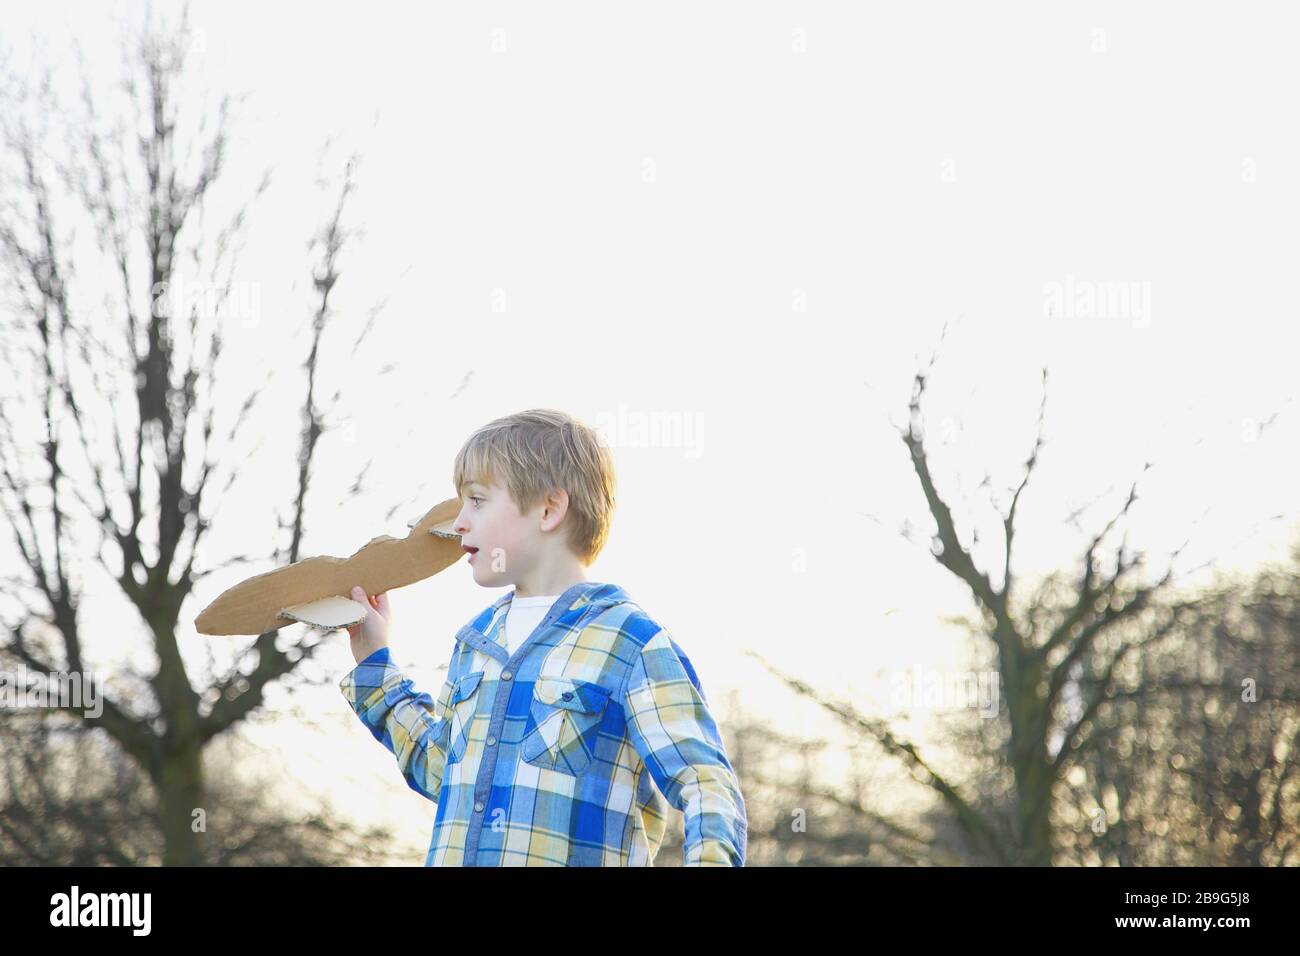 Junge, der mit einem Pappflugzeug im Park spielt Stockfoto